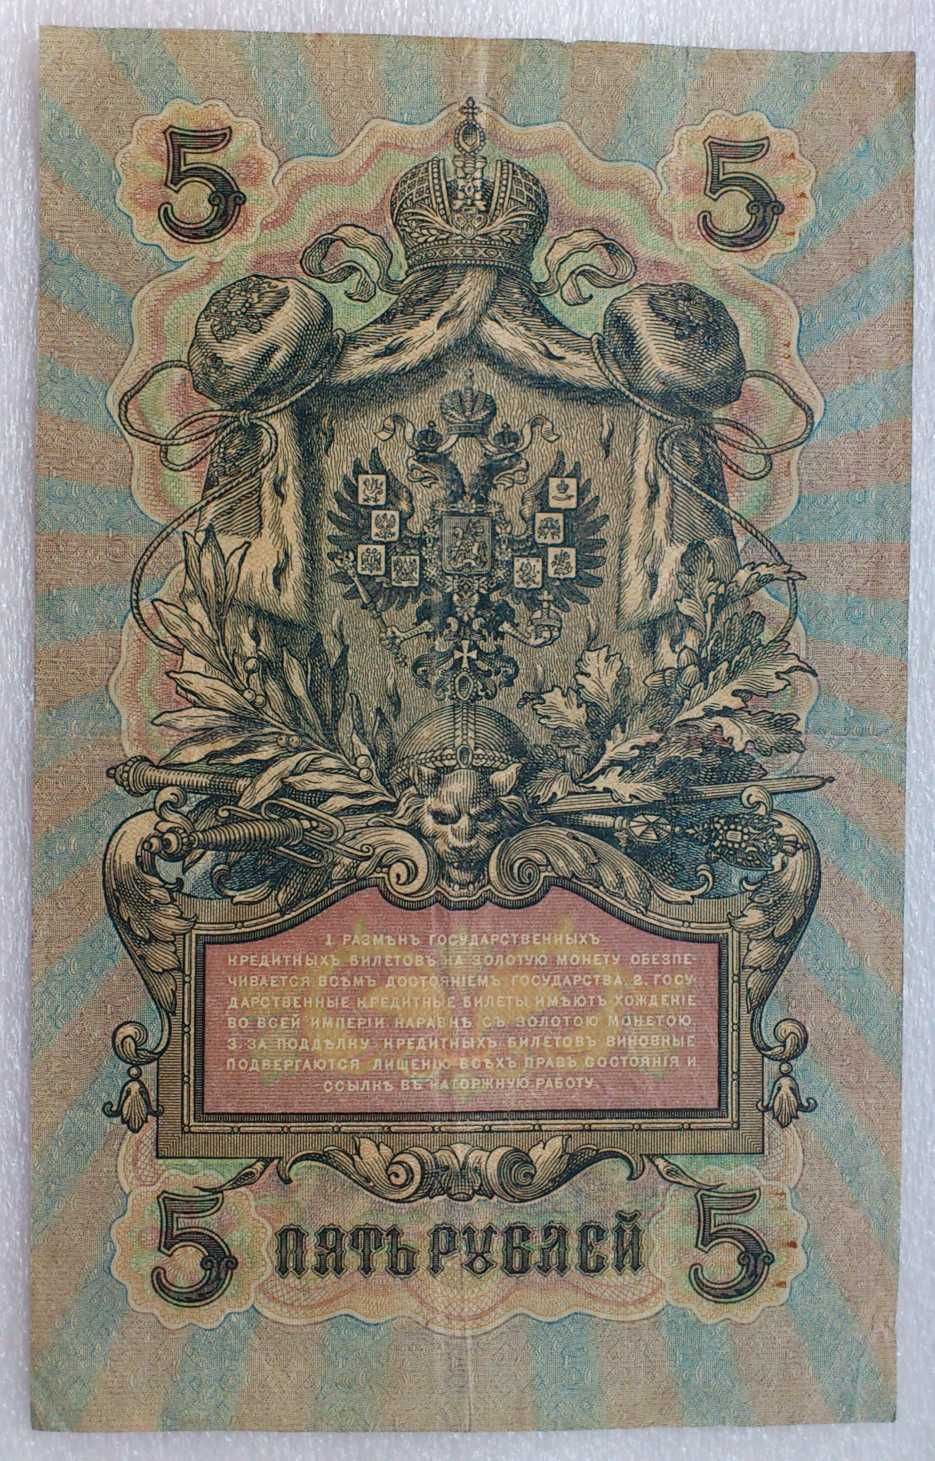 5 руб 1909 г. Государственный кредитный билет. Шипов, Бубякин. XF